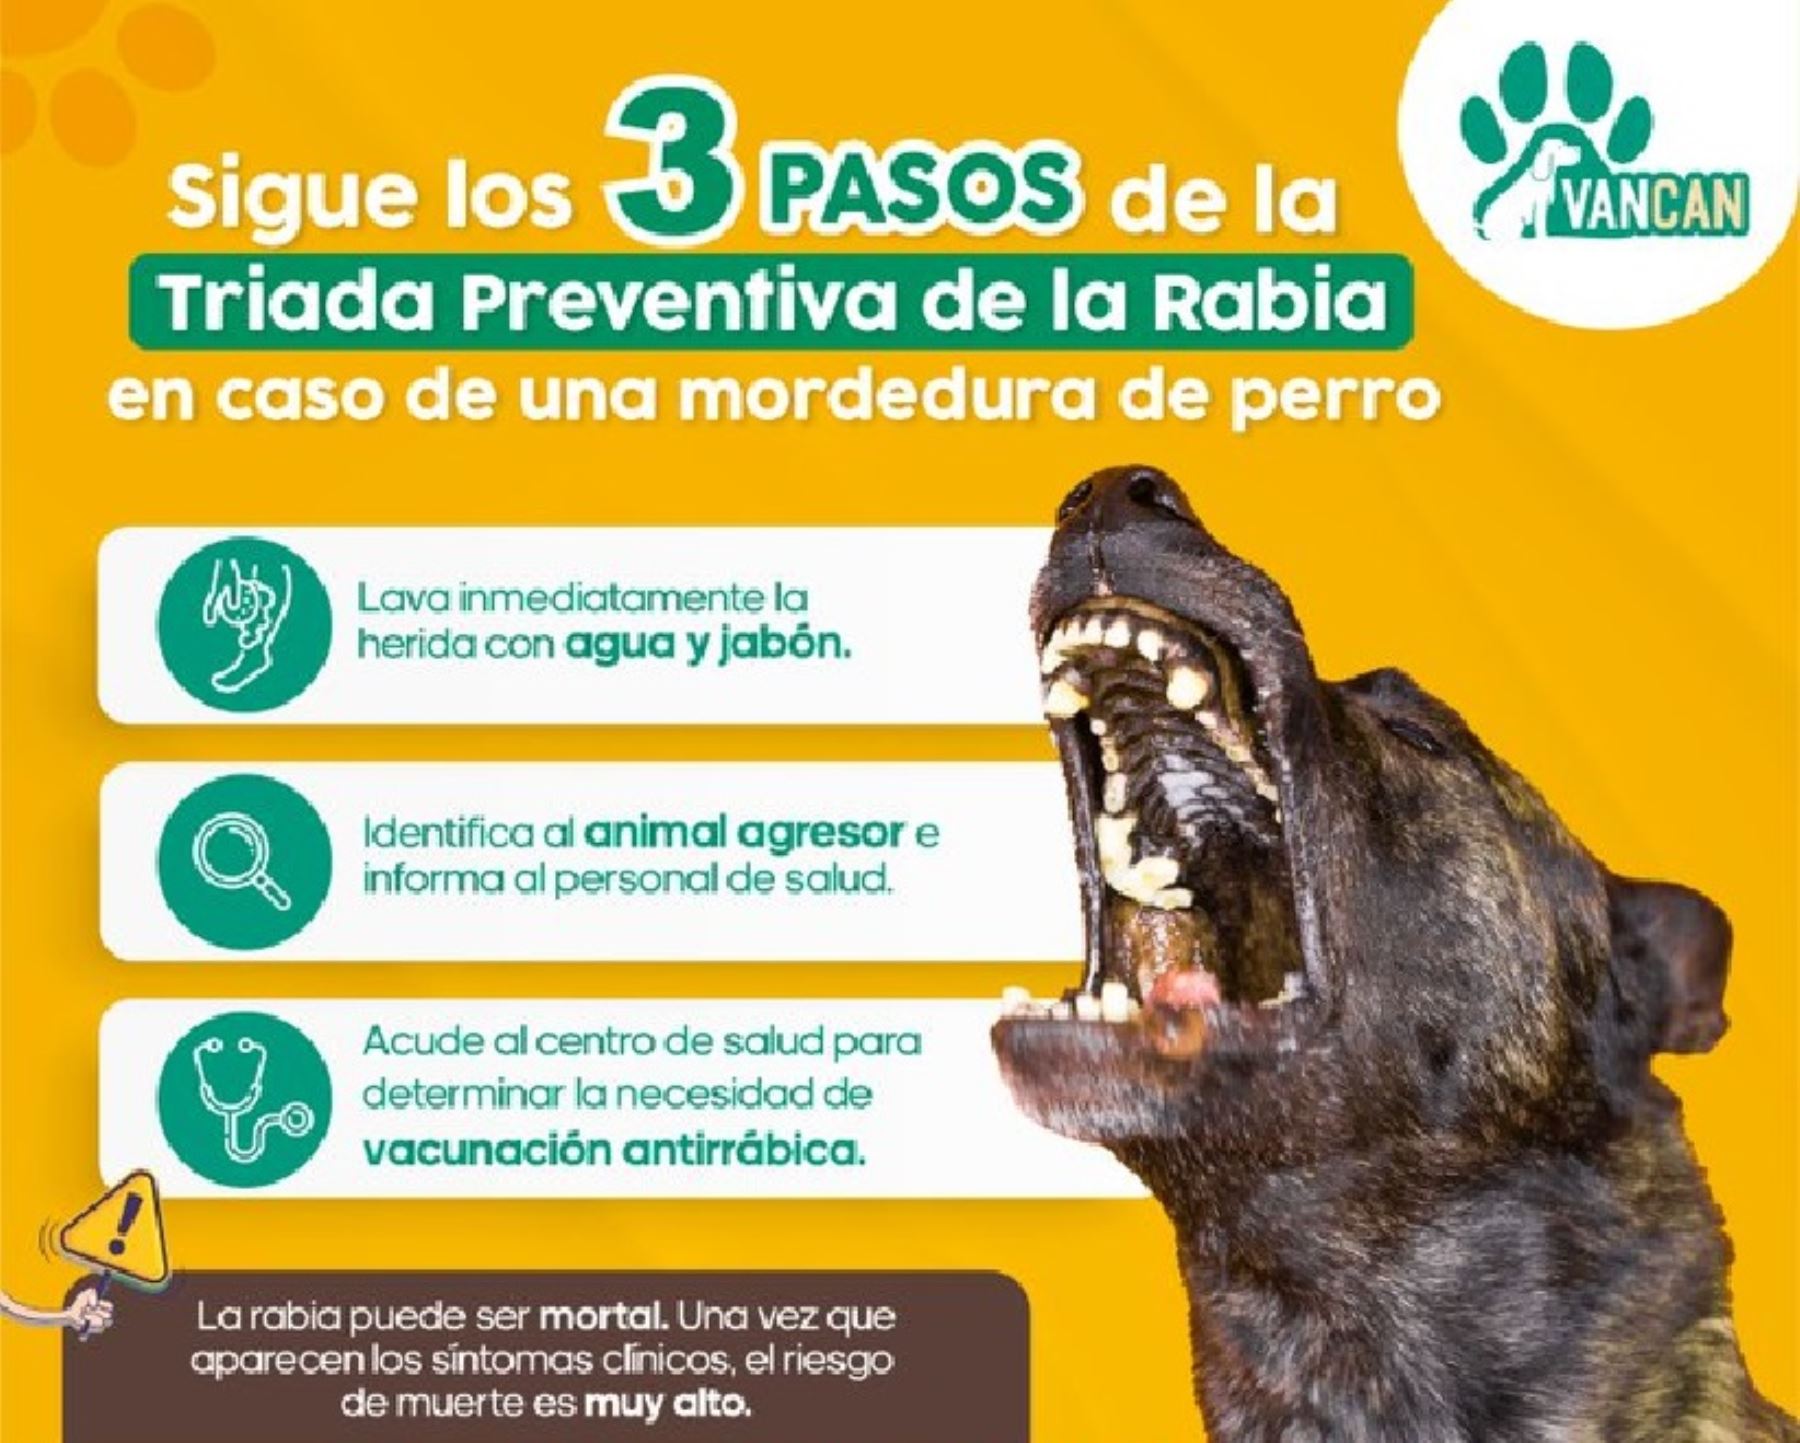 Ministerio de Salud recomienda, en caso de ser mordido por un perro, acudir lo más pronto posible a un establecimiento de salud para recibir el tratamiento adecuado.